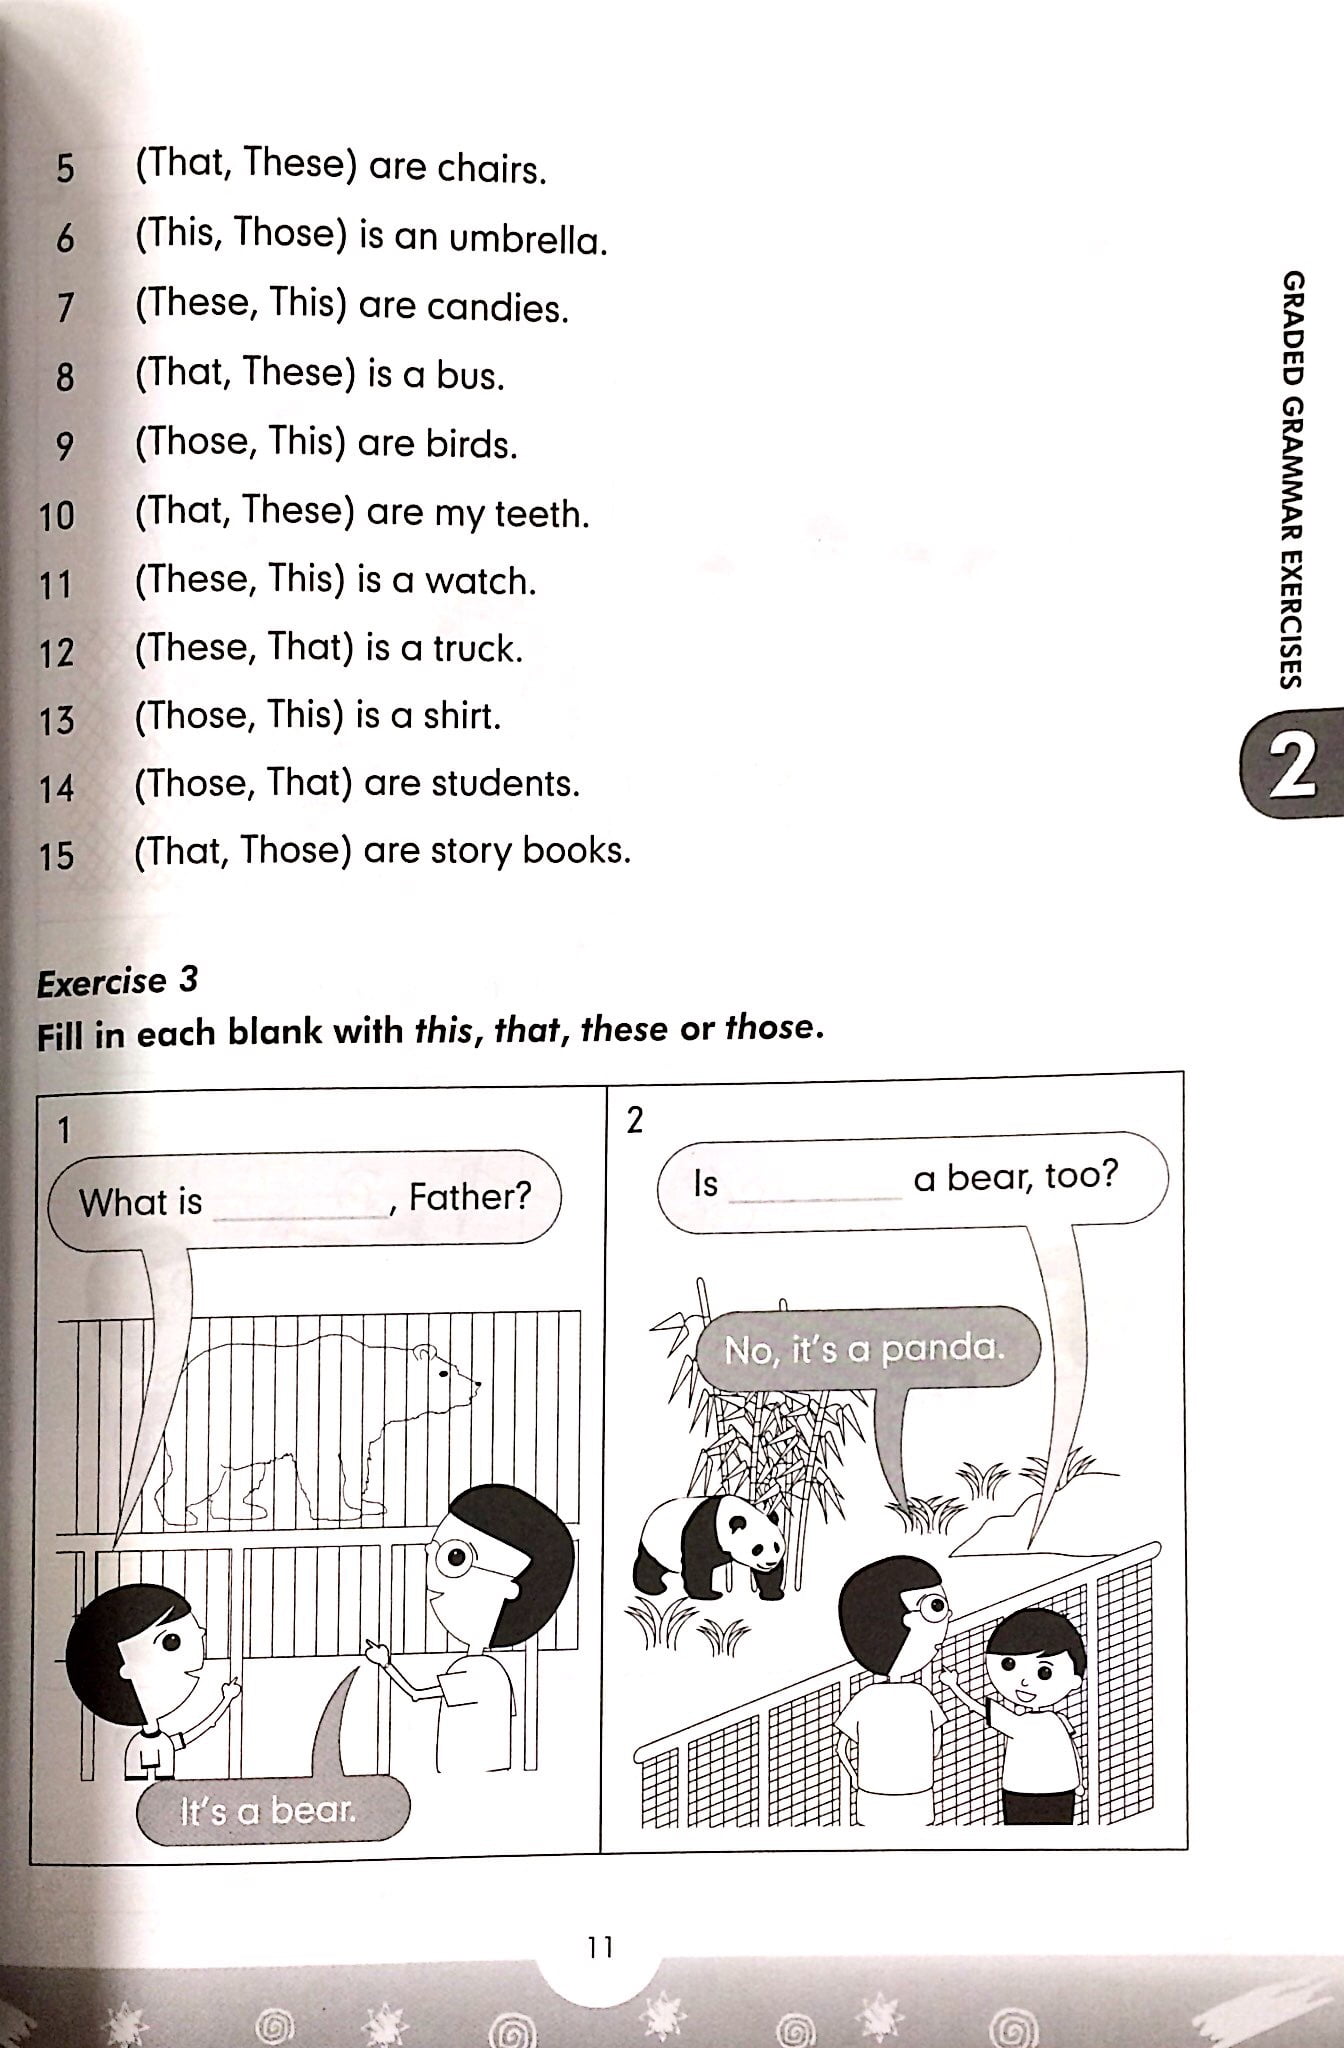 Graded Grammar Exercises 2 Không CD PDF